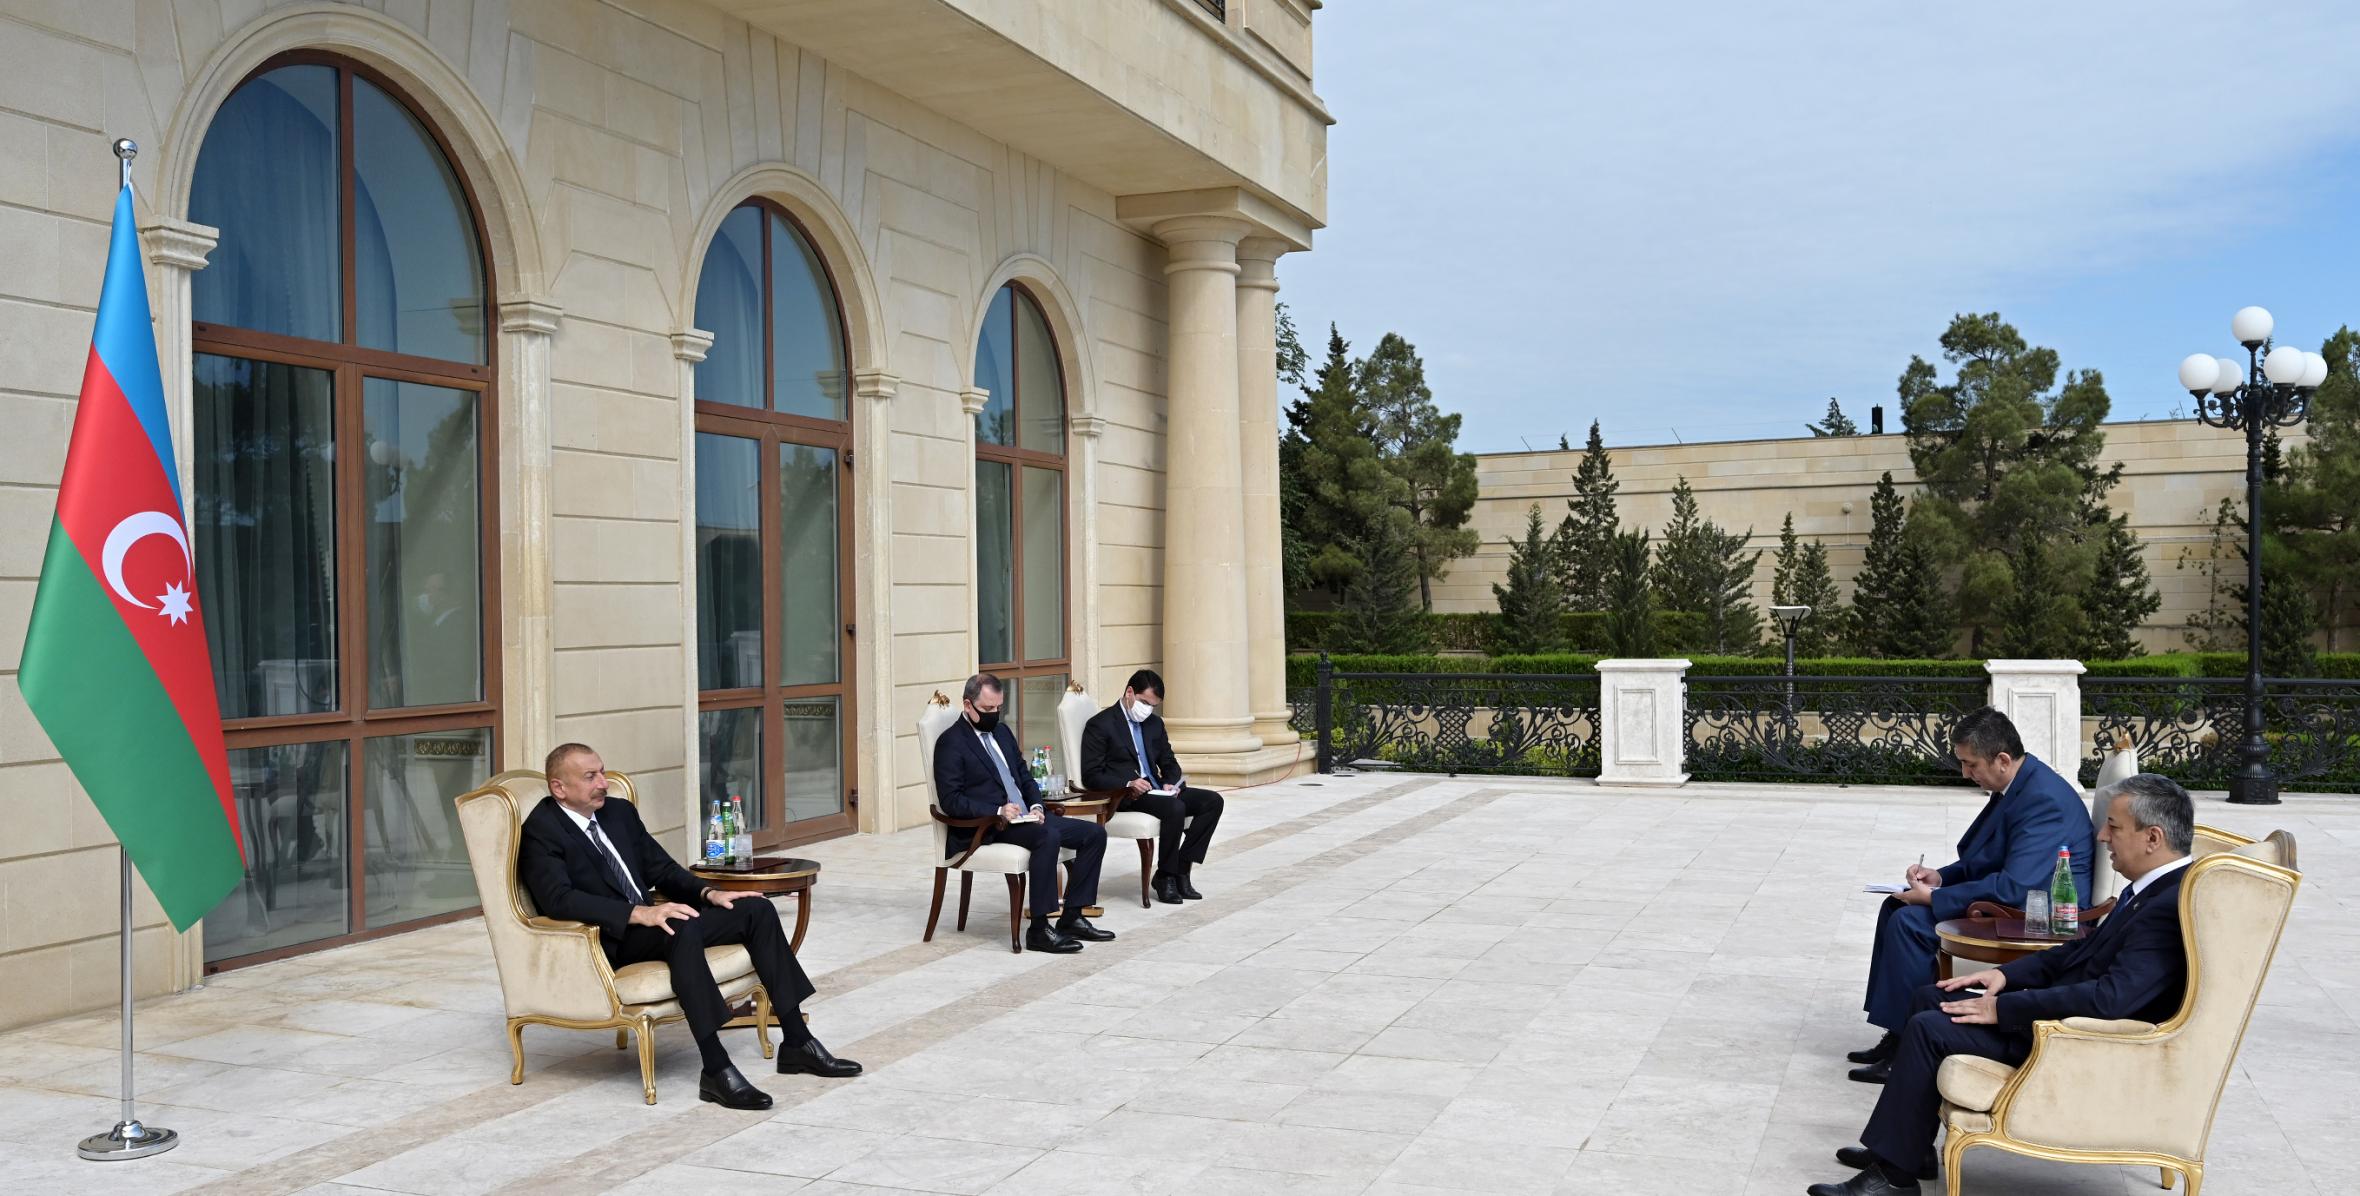 Ильхам Алиев принял верительные грамоты новоназначенного посла Узбекистана в Азербайджане